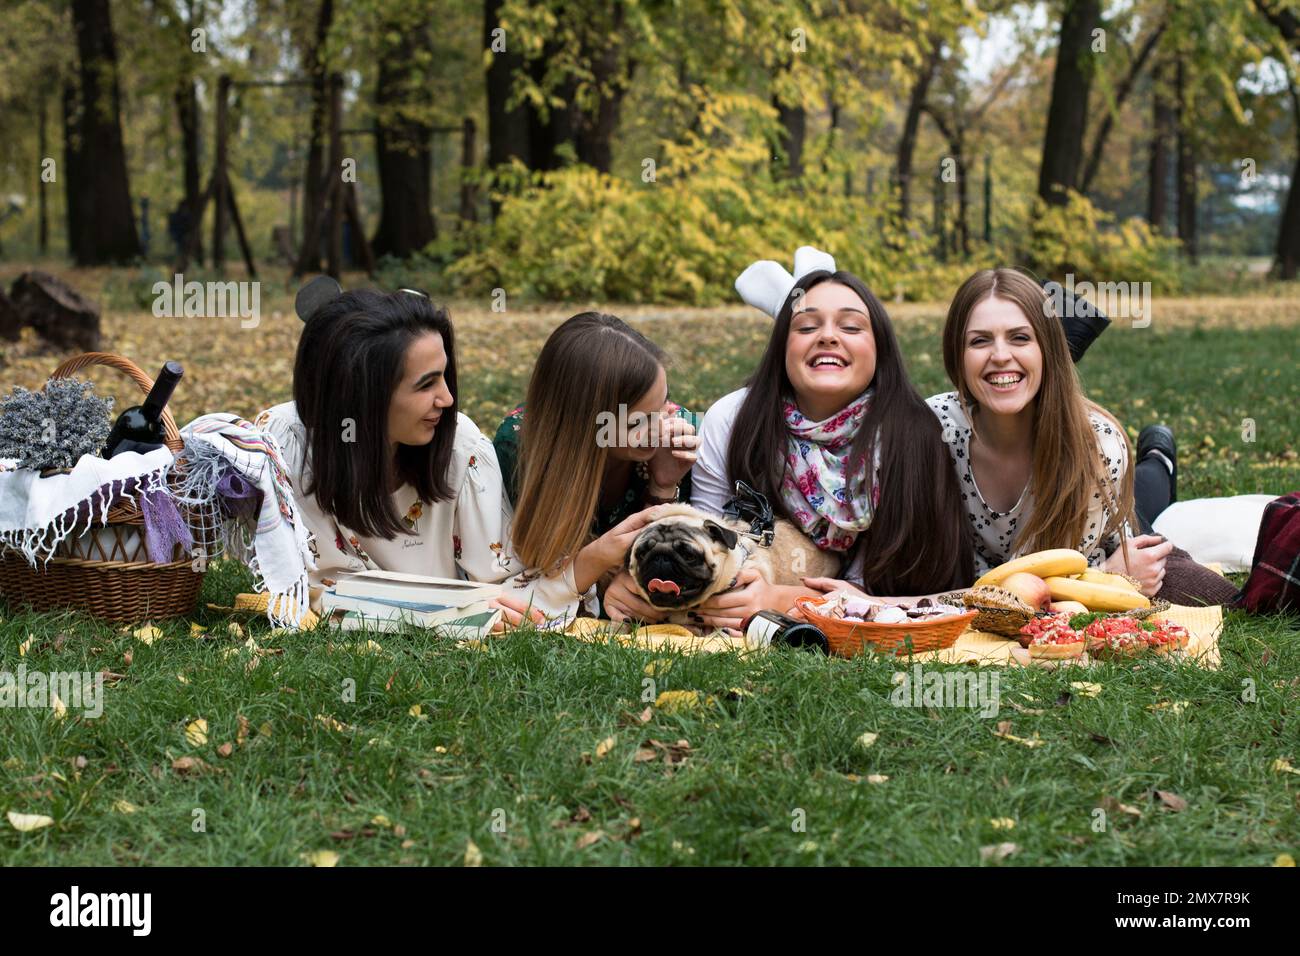 Eine Gruppe von vier jungen Frauen im Park auf einem lustigen Picknick, mit einem süßen Hund. Stockfoto